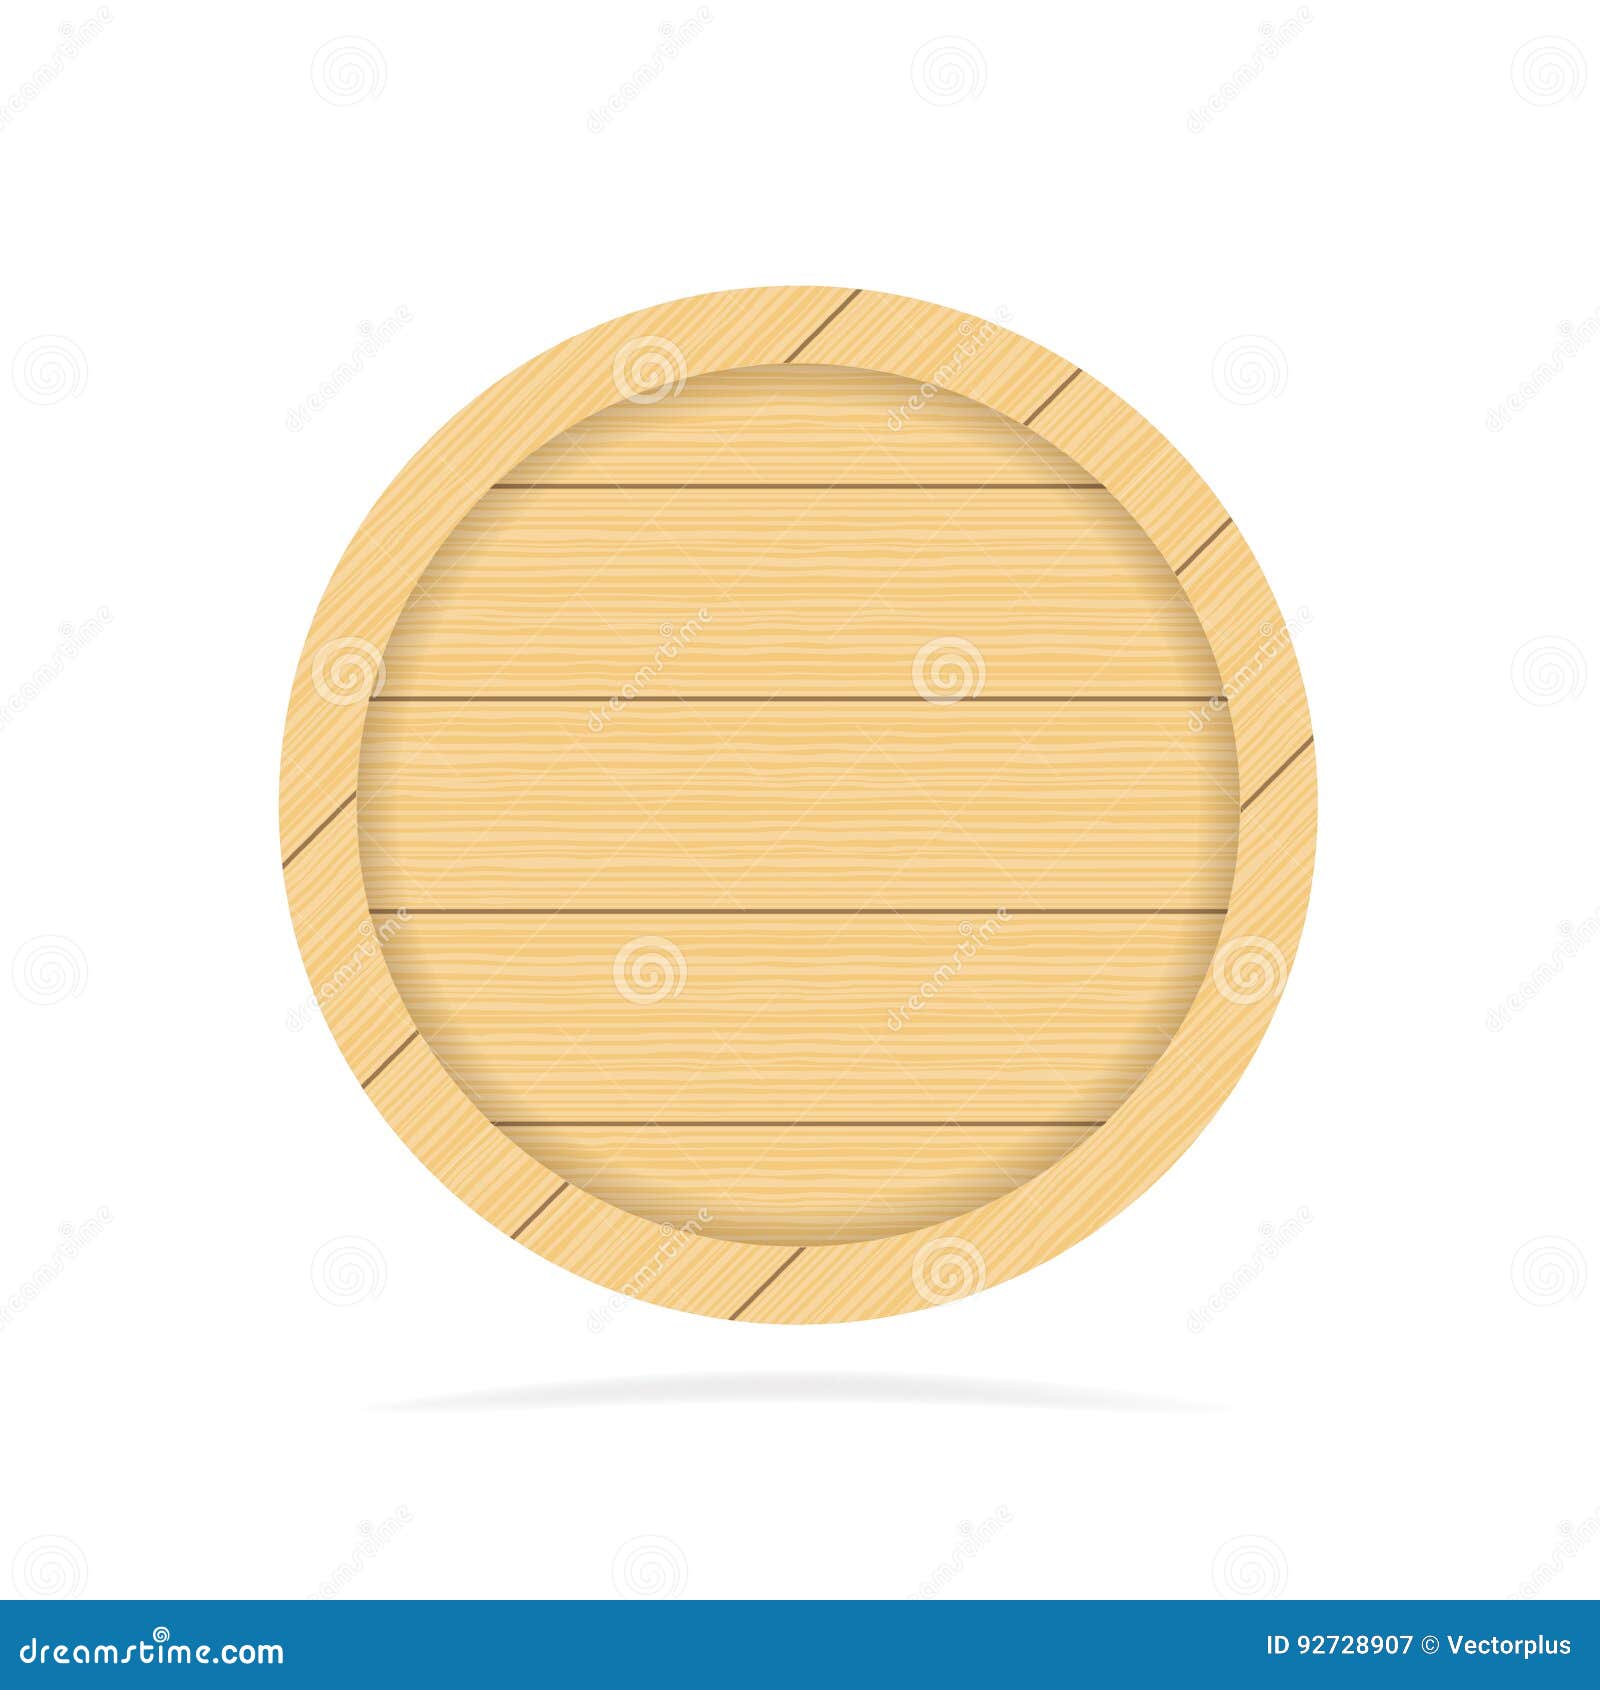 Mẫu thiết kế wood background logo ấn tượng